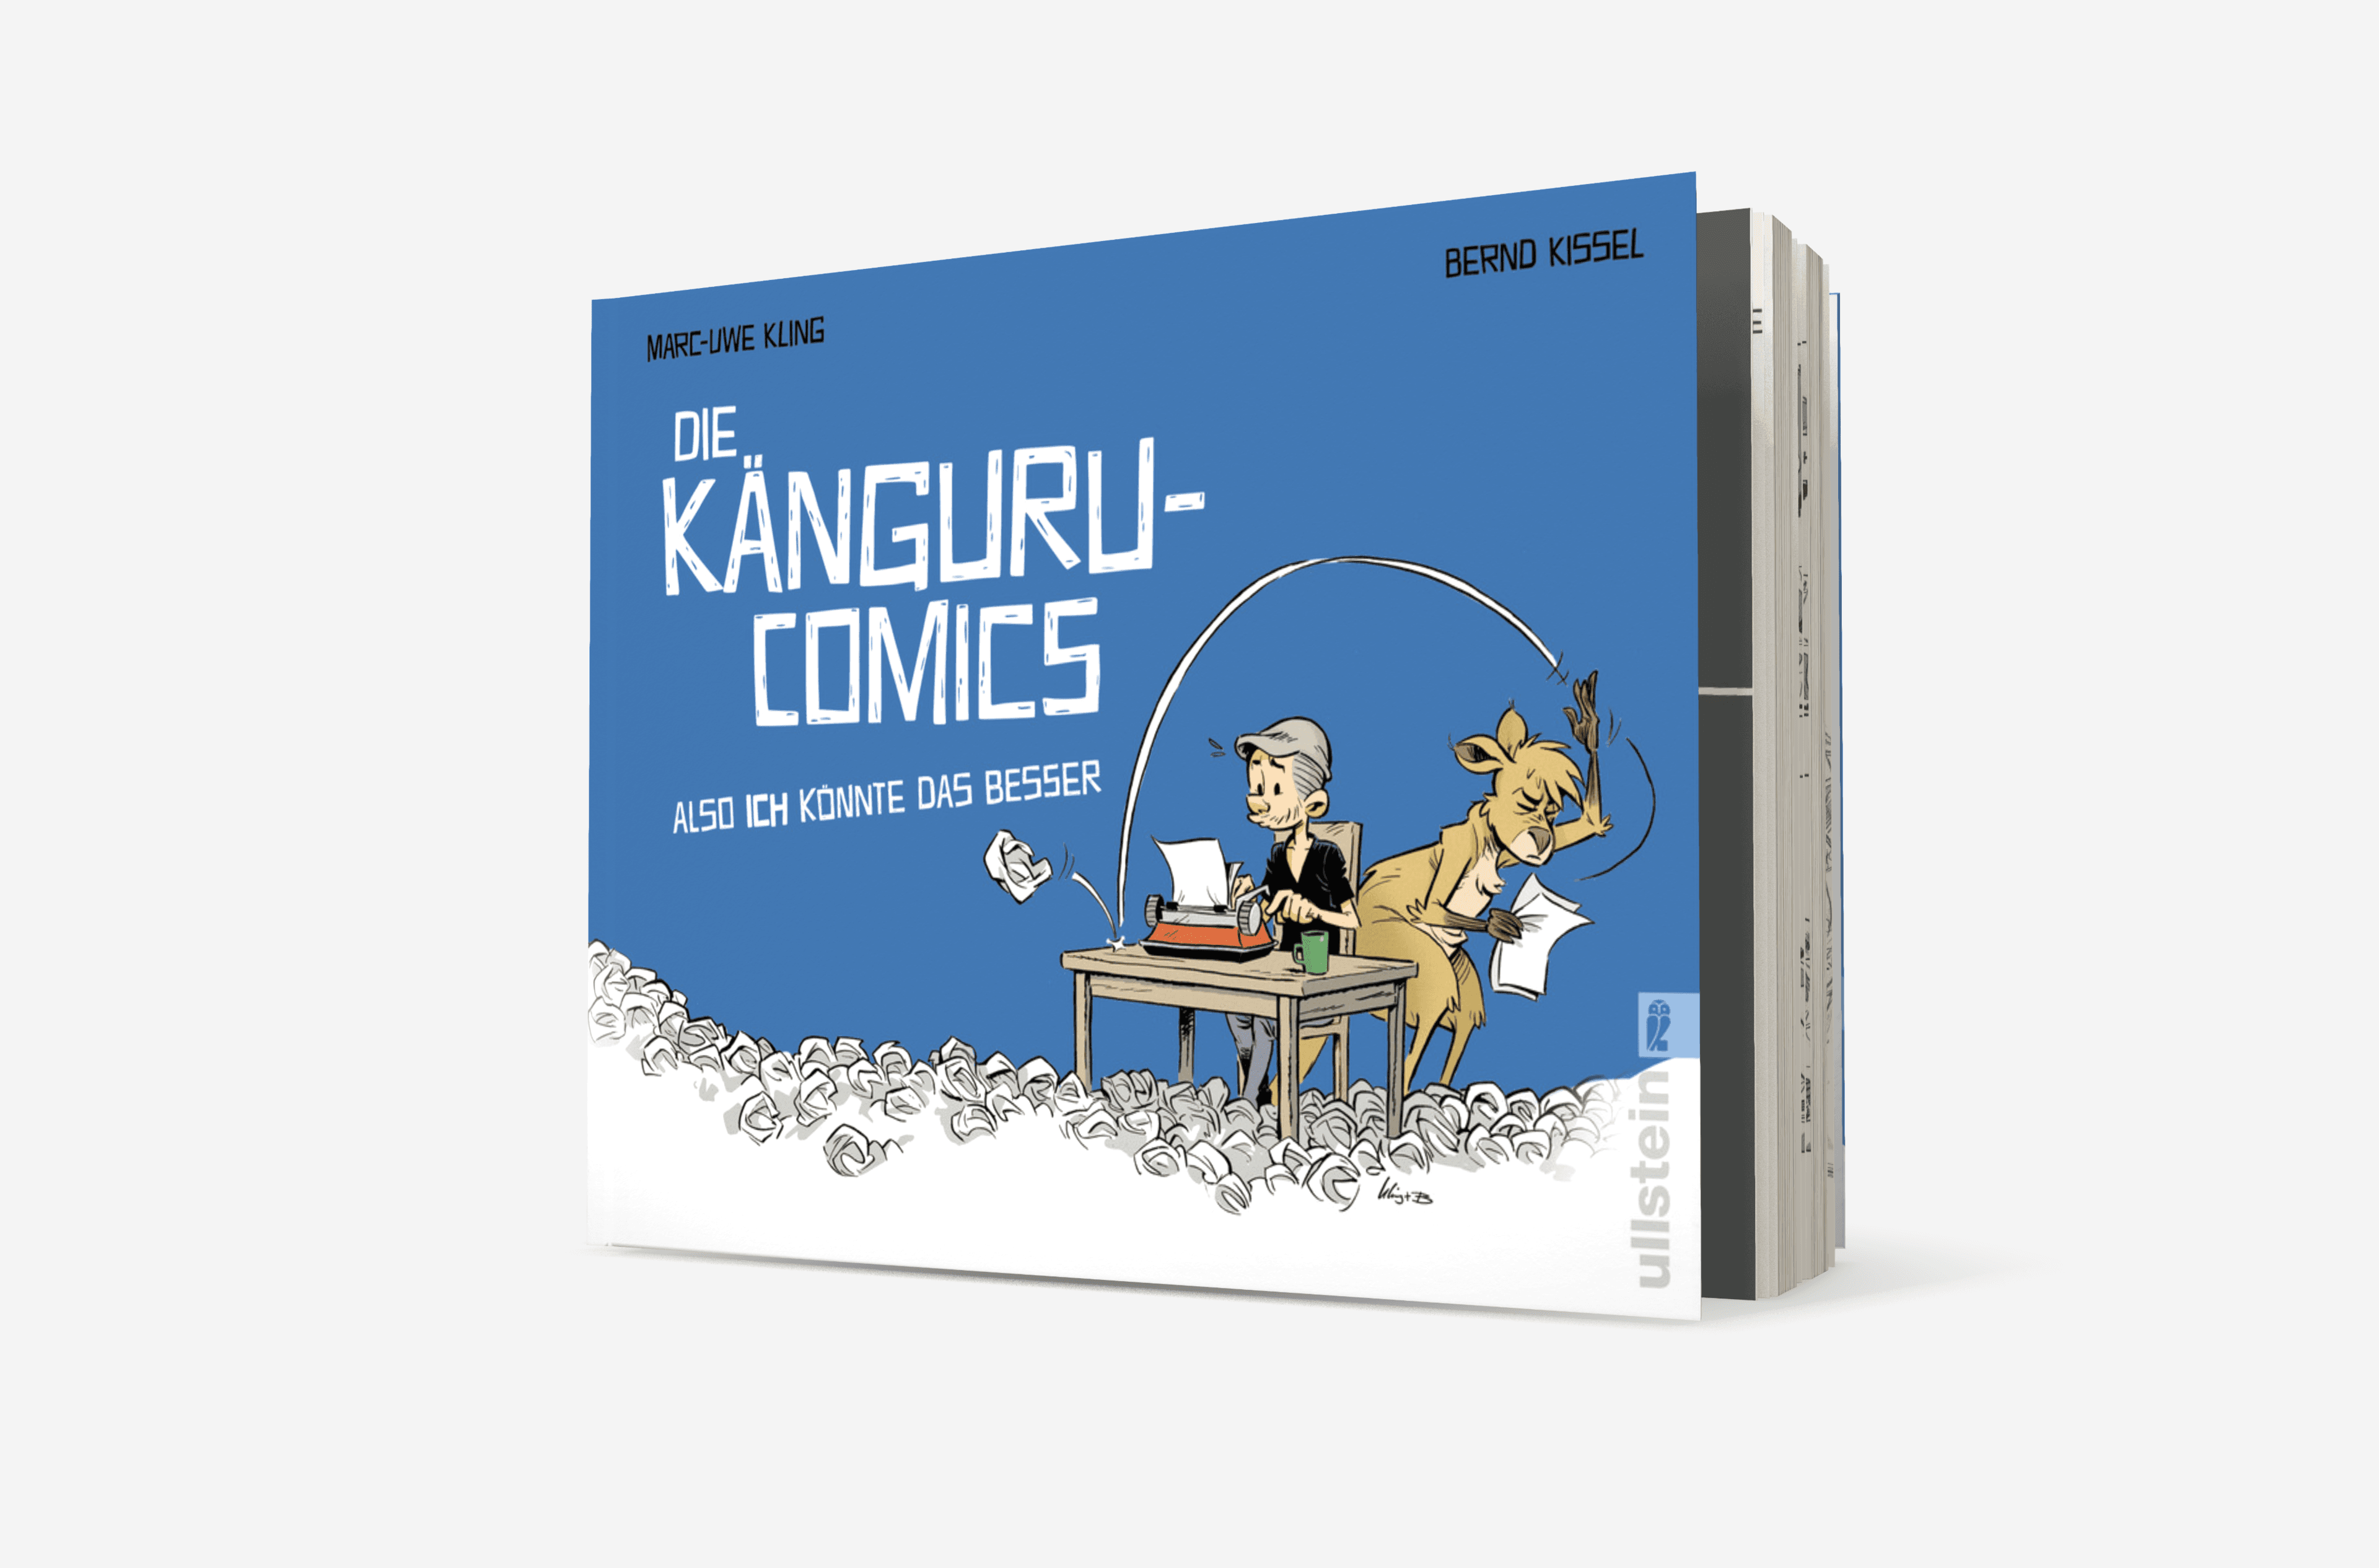 Buchcover von Die Känguru-Comics: Also ICH könnte das besser